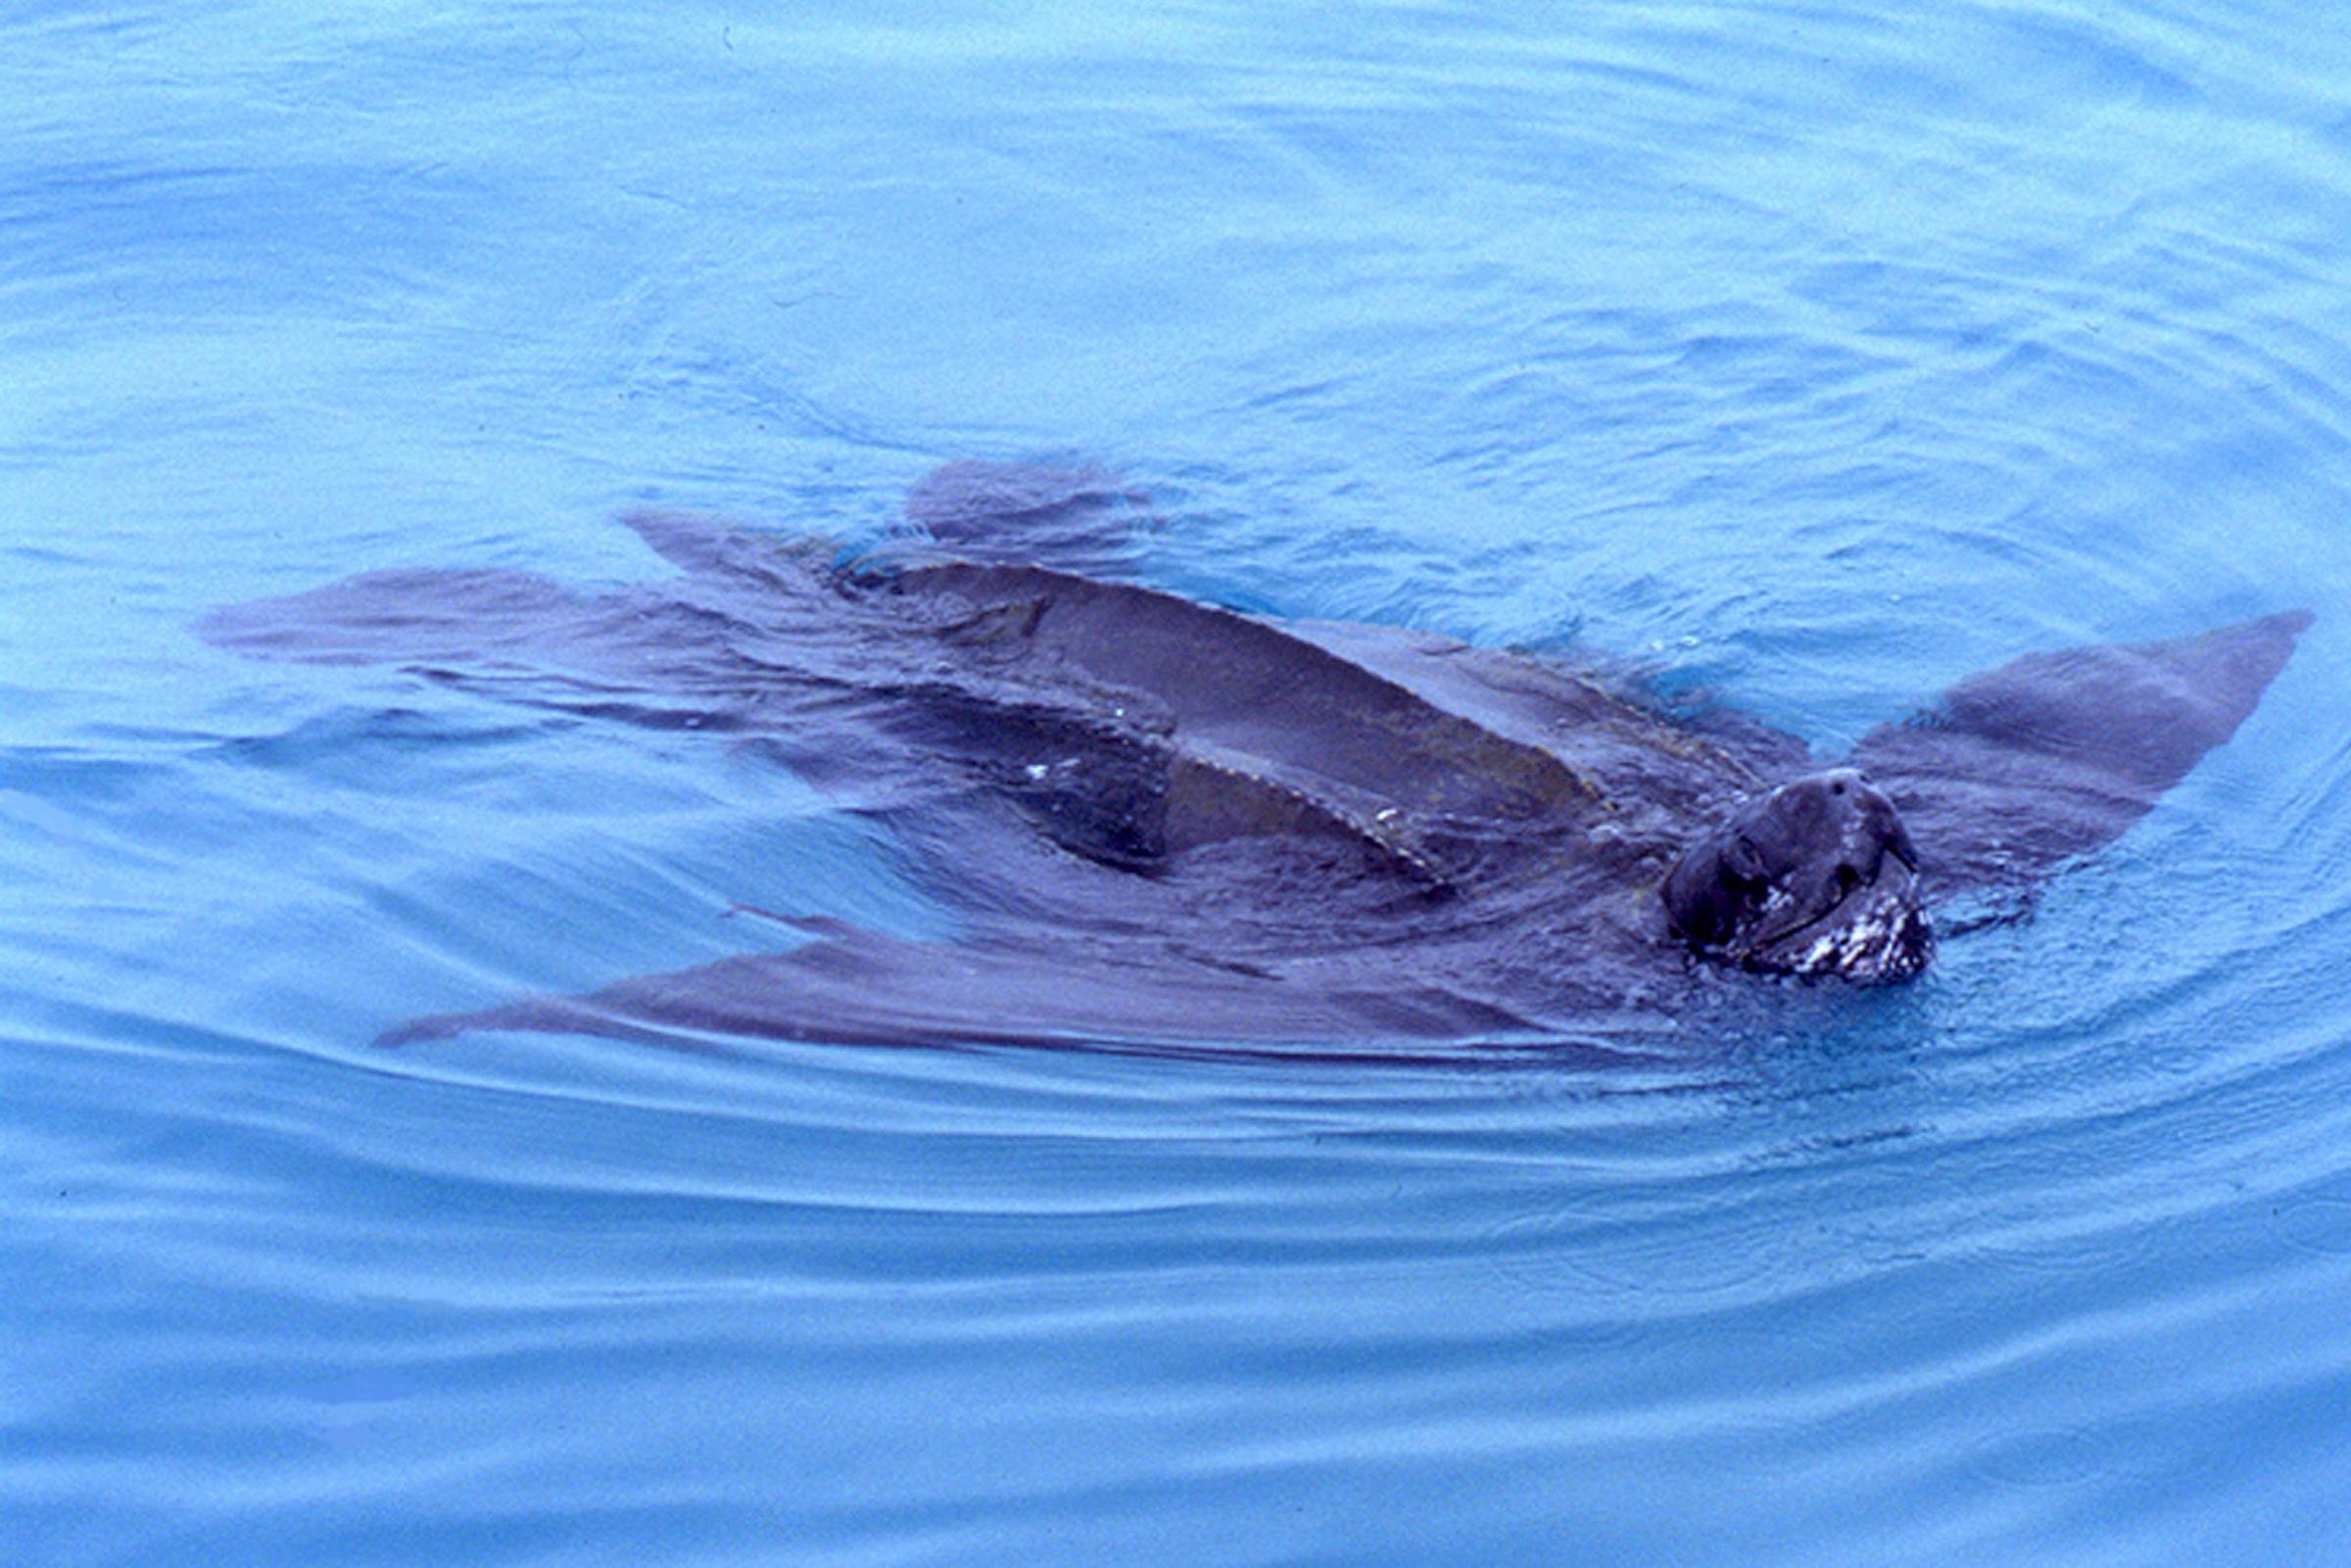 Rare leatherback turtle spotted in sea near Brighton's Rampion windfarm